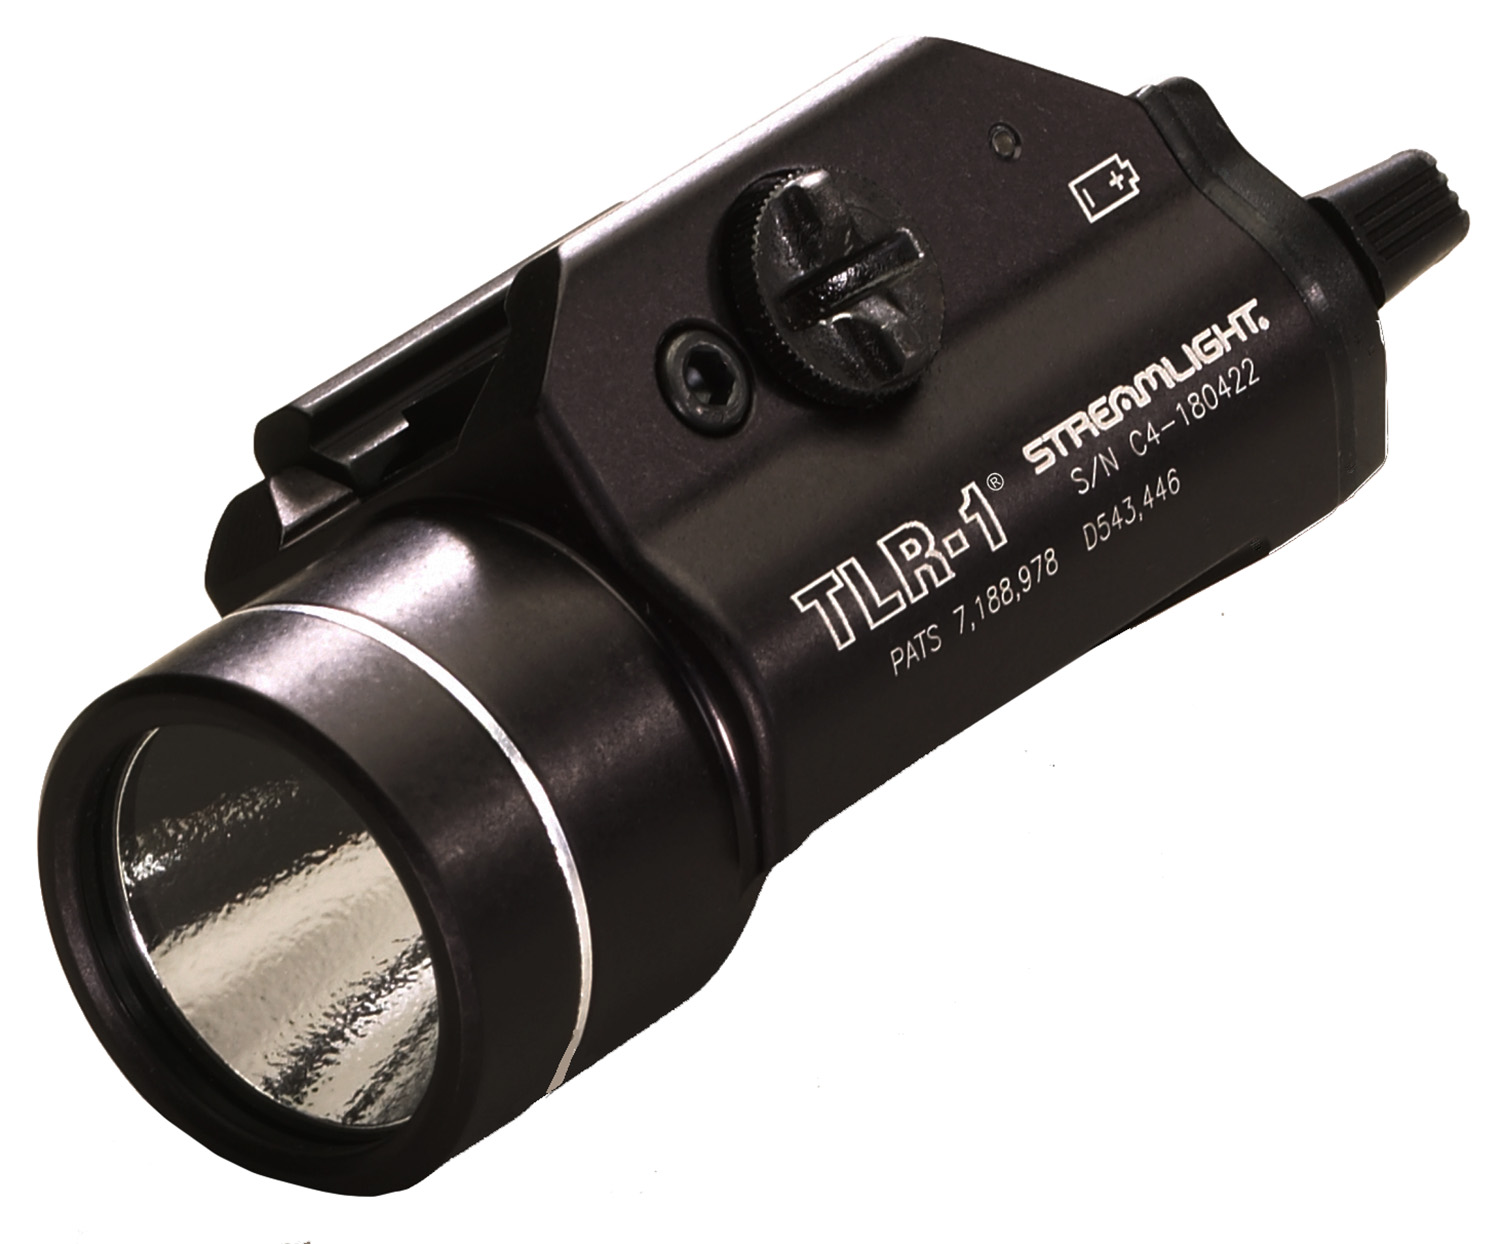 Streamlight 69110 TLR-1 Weapon Light For Handgun 300 Lumens Output White LED